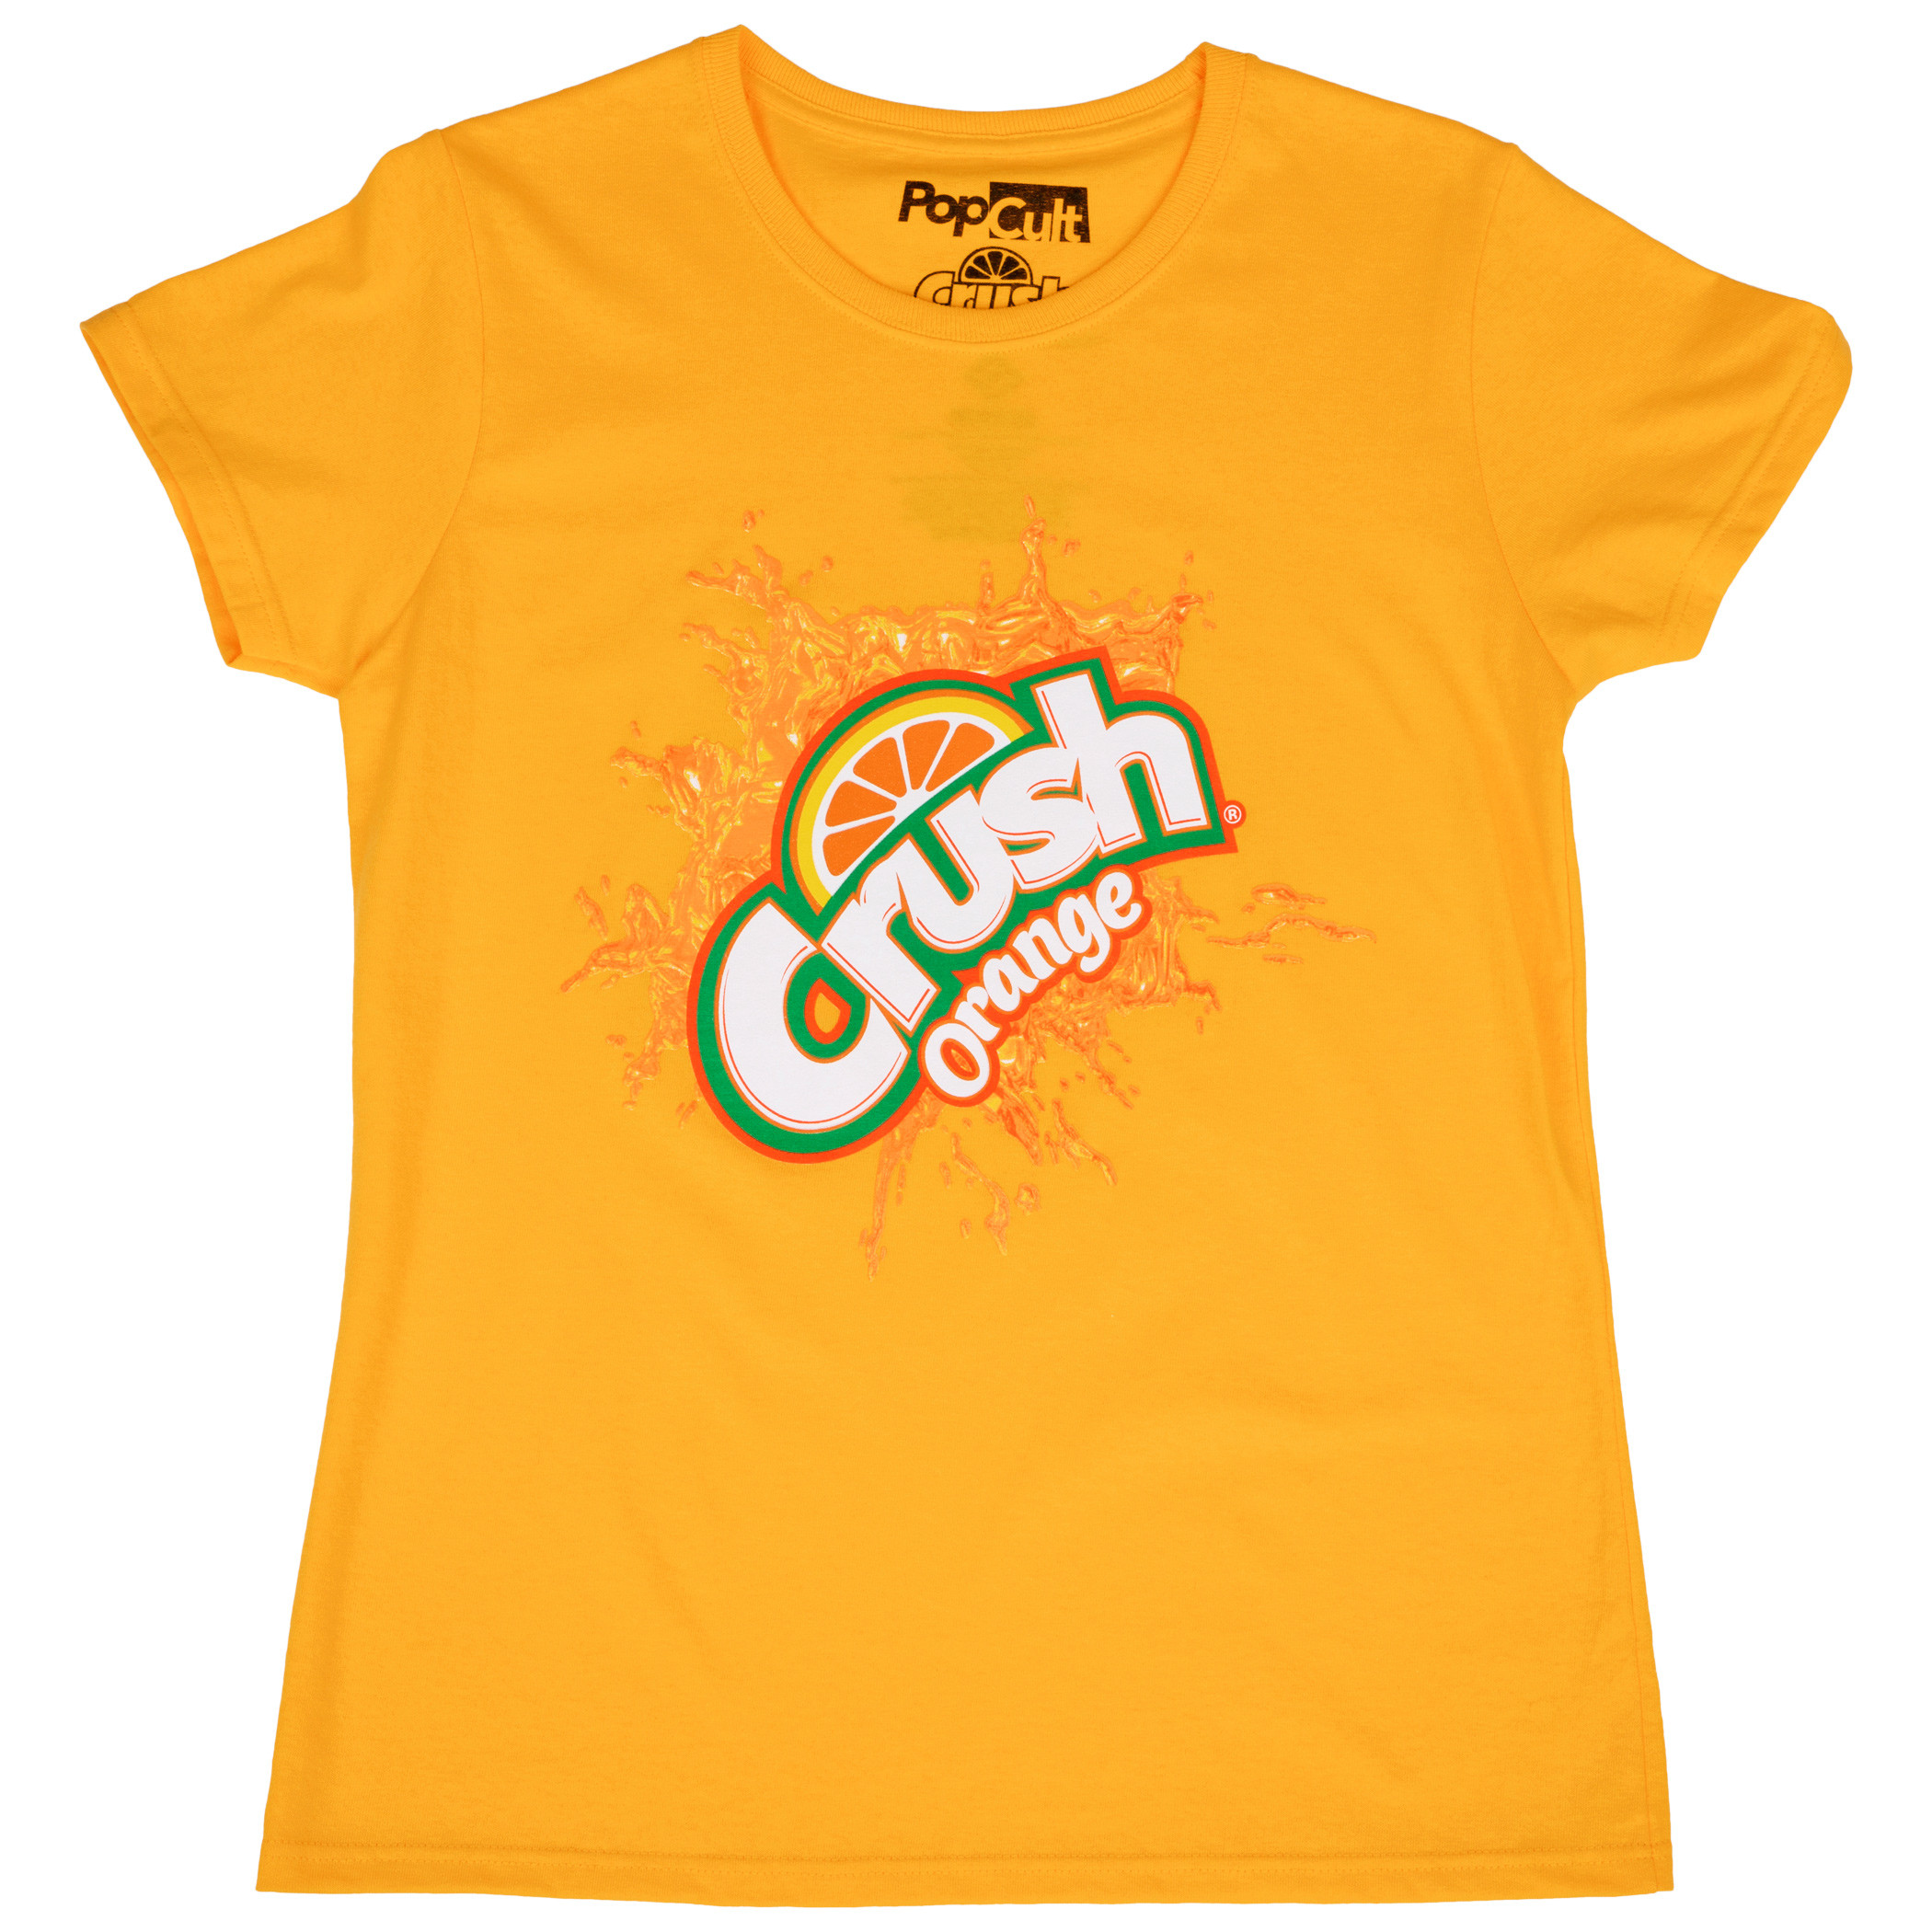 orange crush t shirt